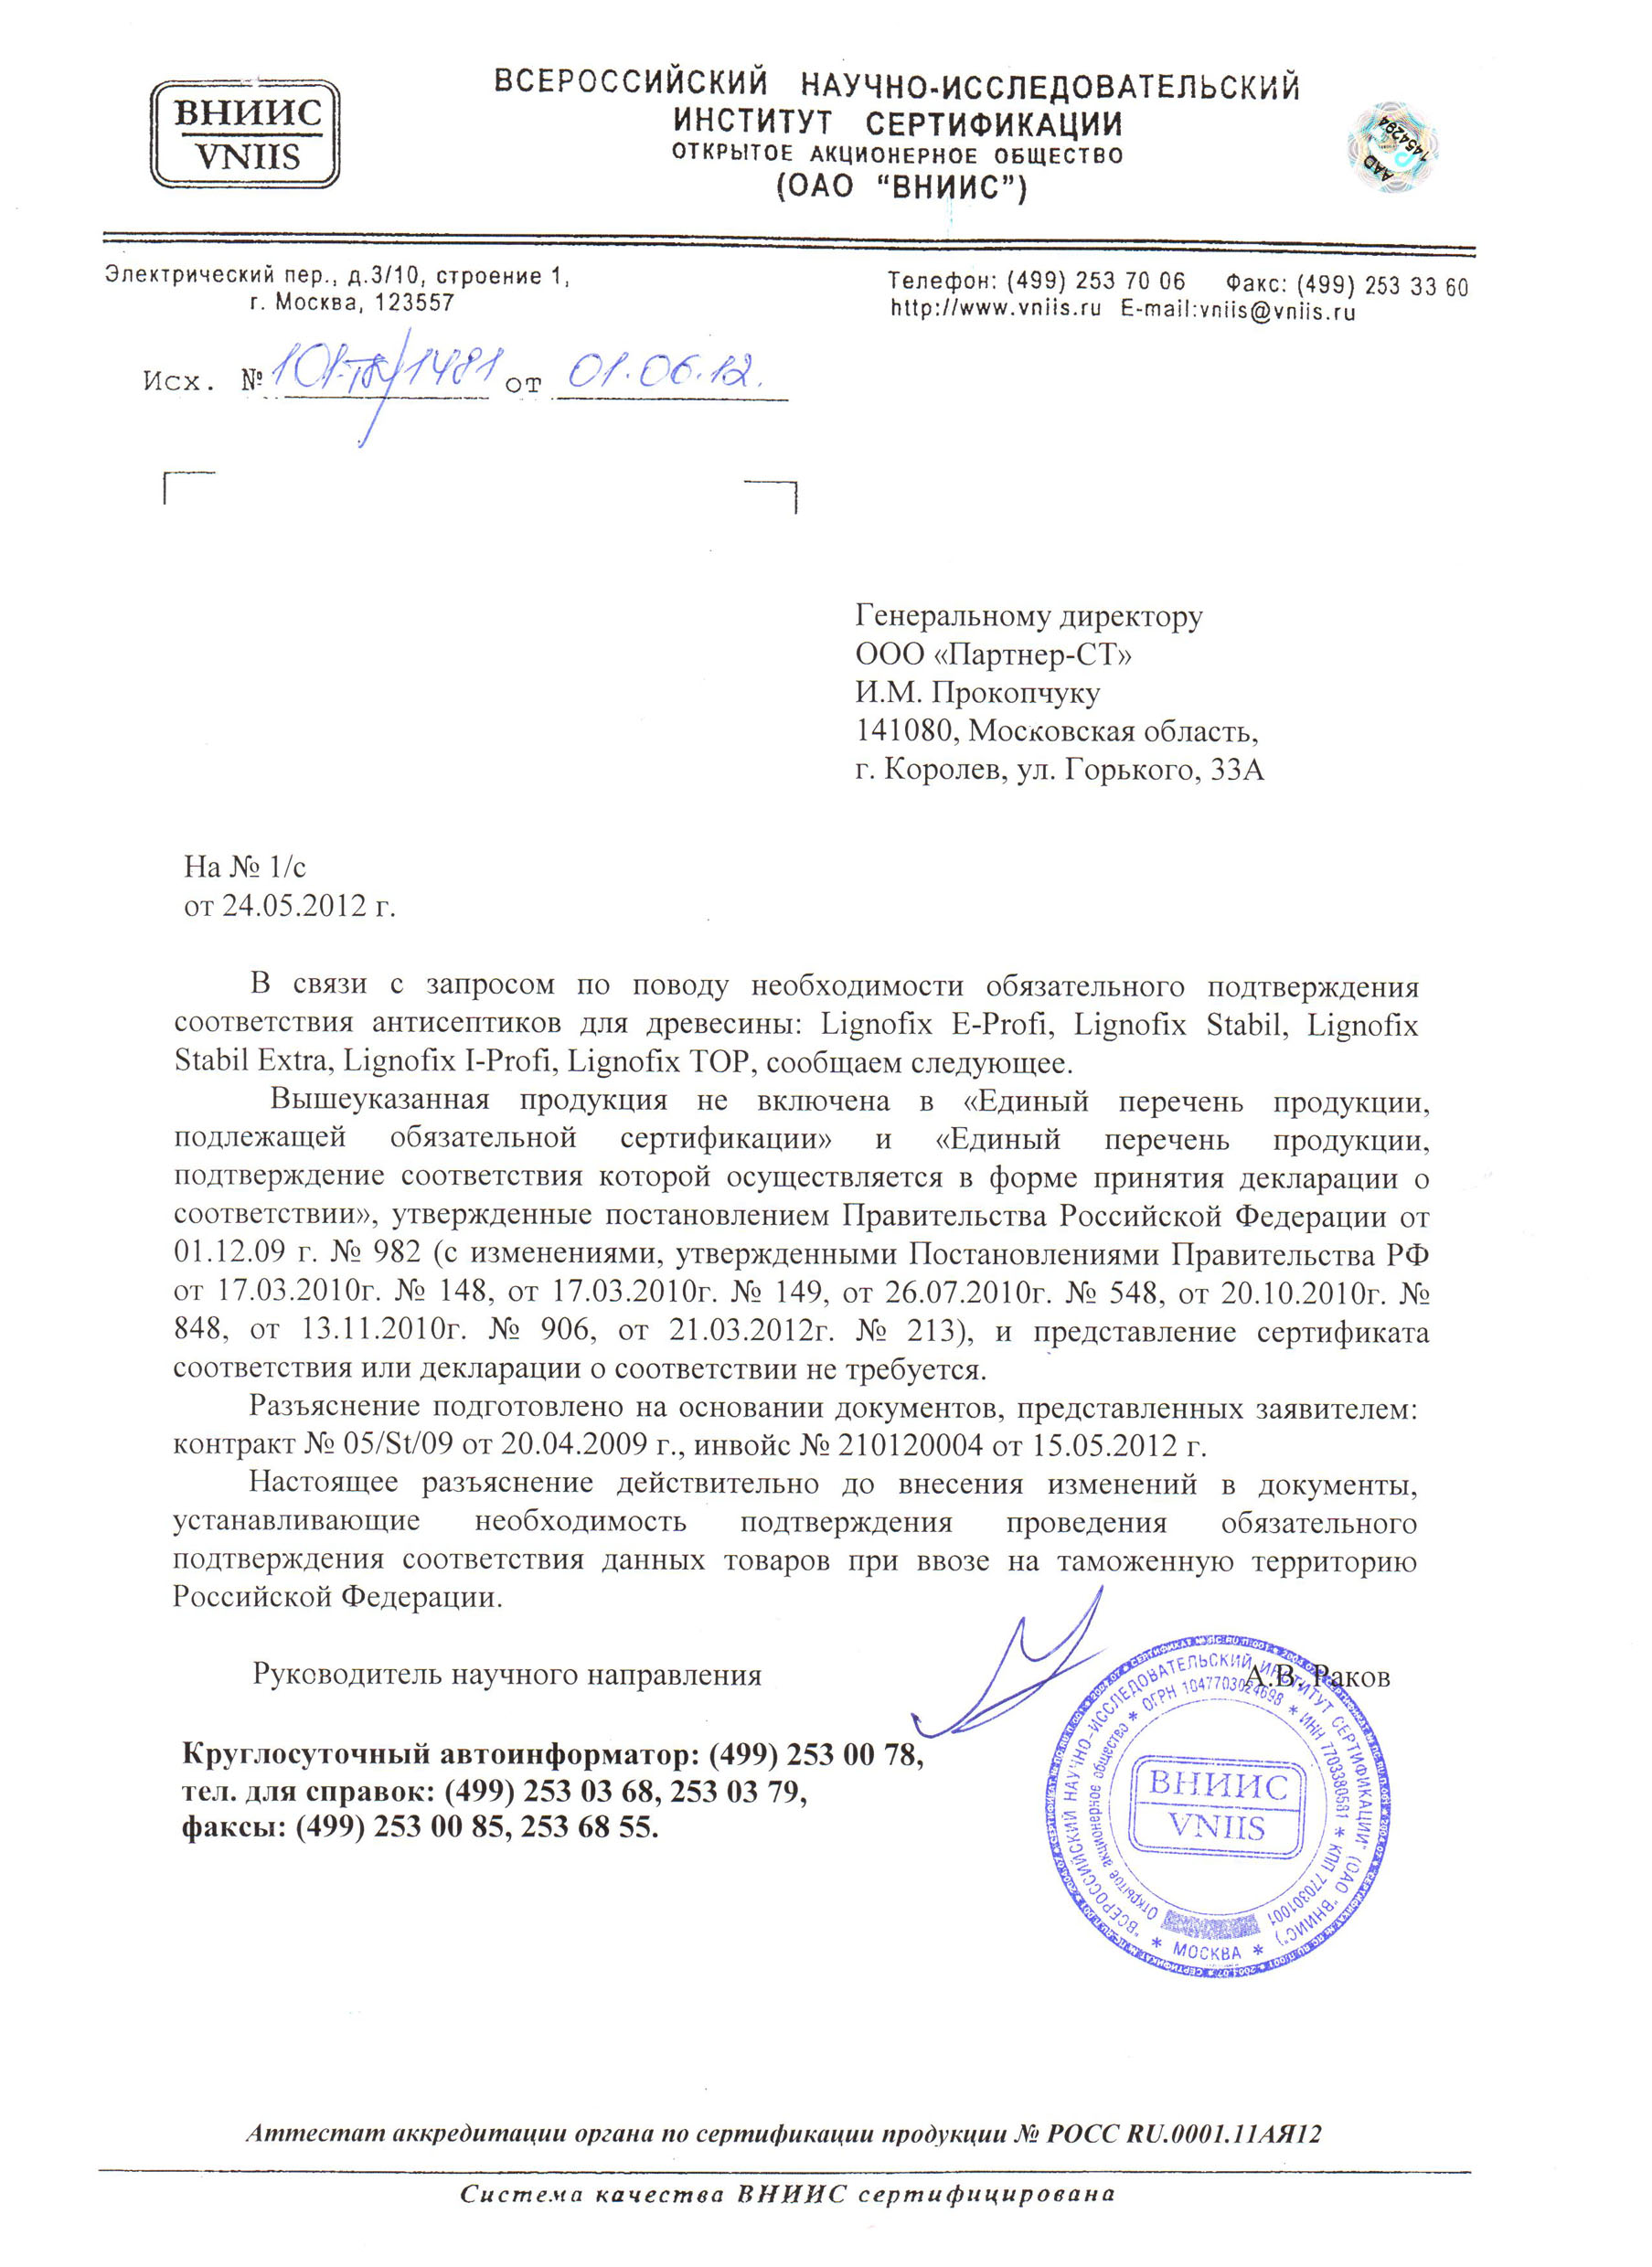 Всероссийский научно-исследовательский институт сертификации ВНИИС